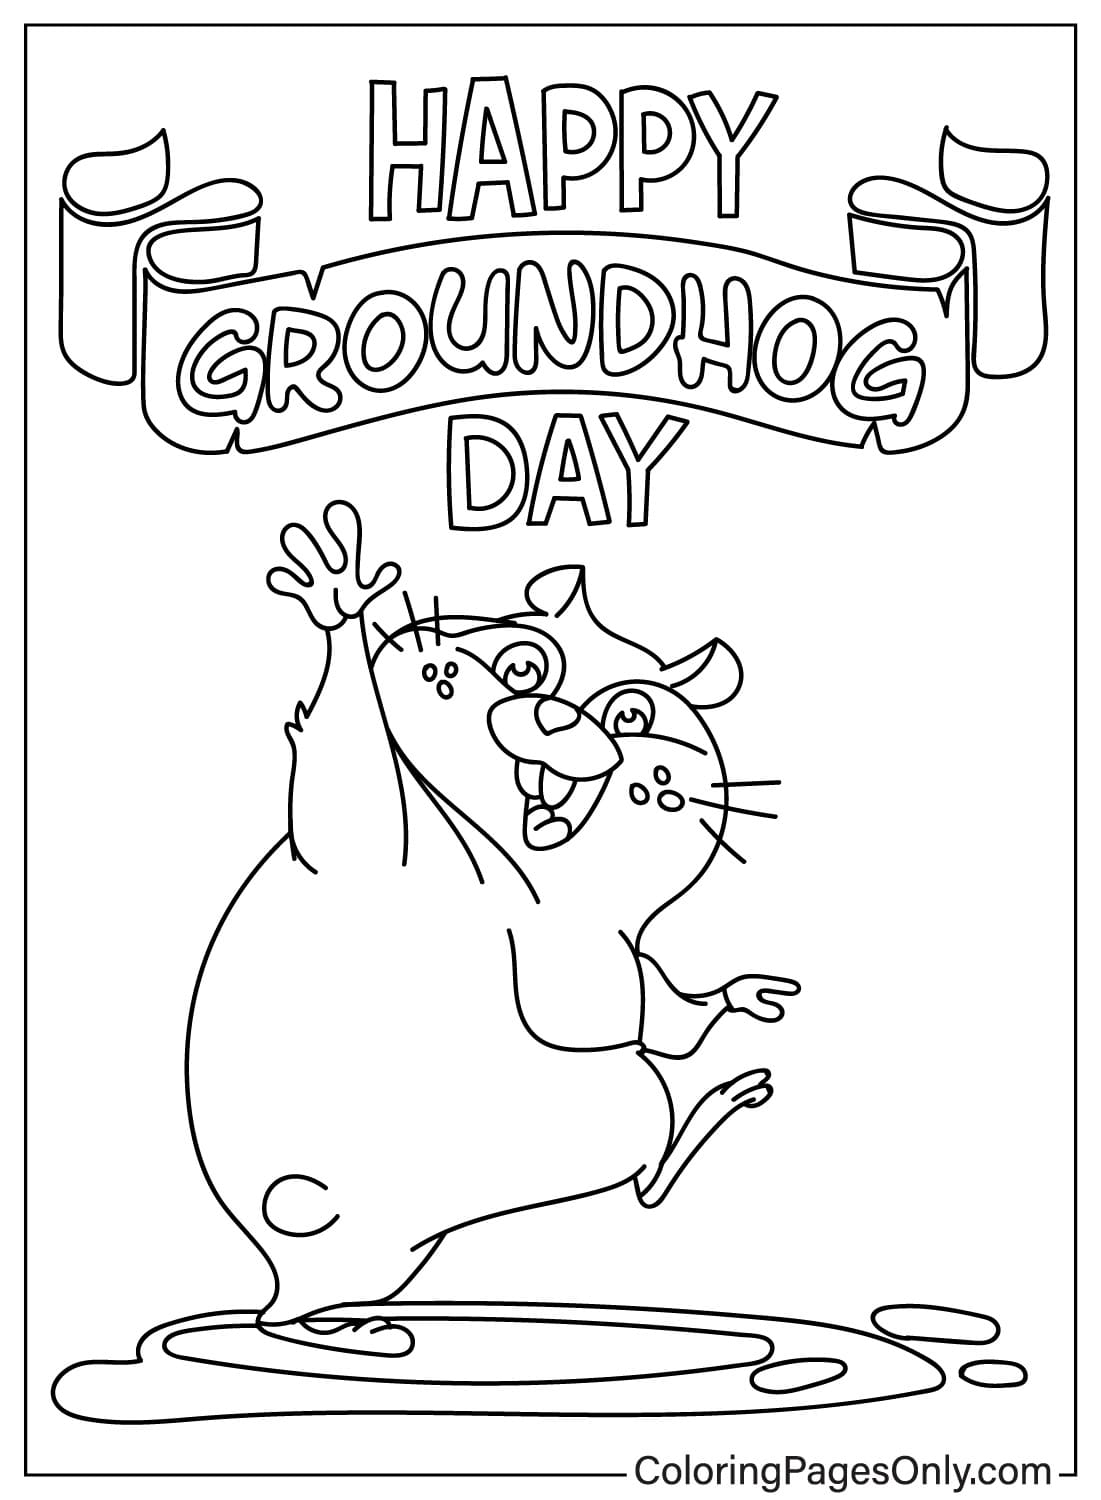 Feliz día de la marmota Página para colorear gratis del Día de la Marmota